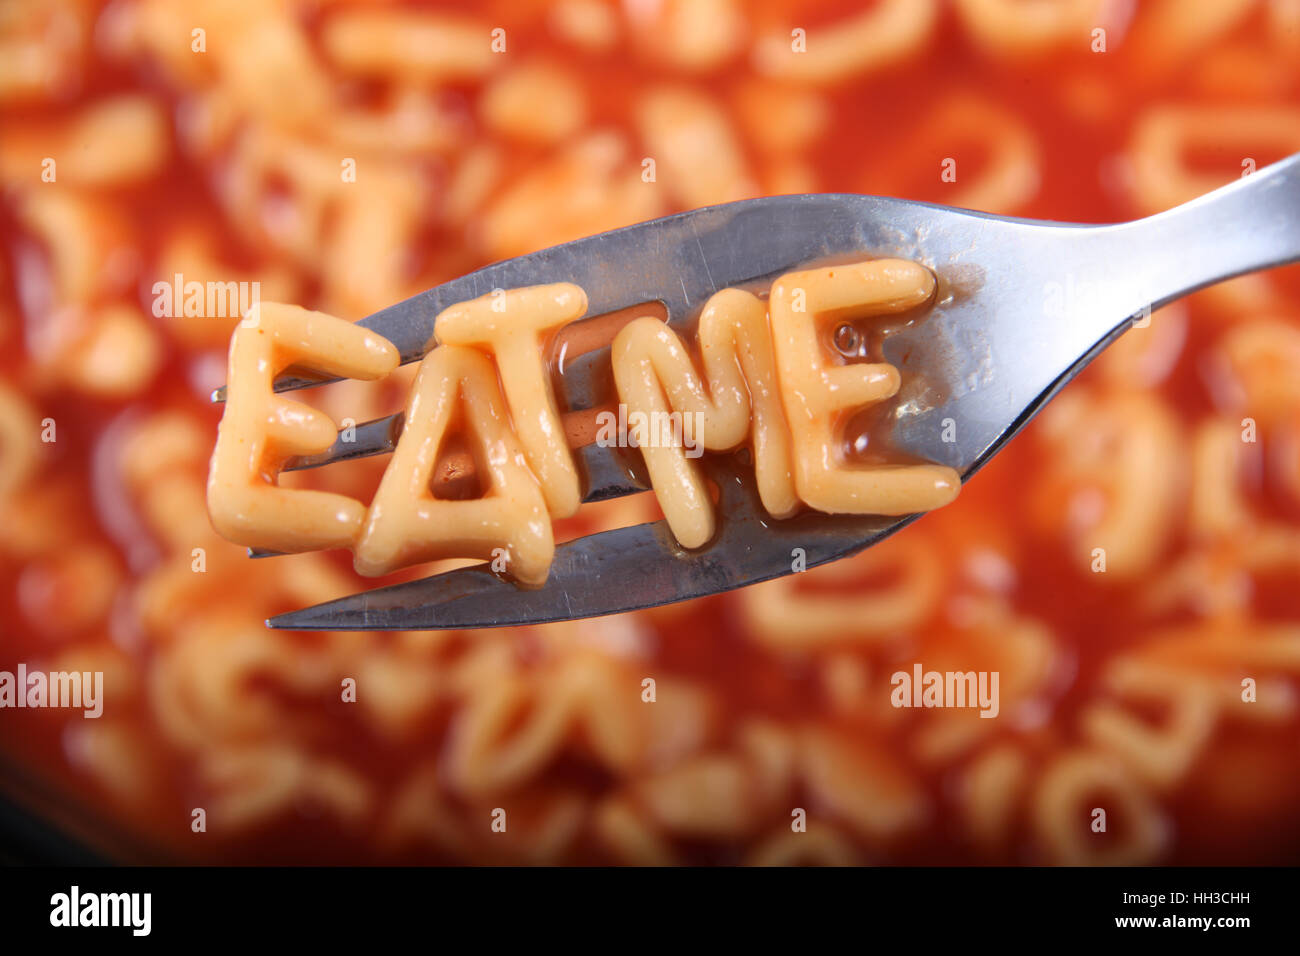 Spaghetti-Brief, die Schreibweise des Wortes "Eat Me" mit den Buchstaben auf einer Gabel aufgehalten. Stockfoto